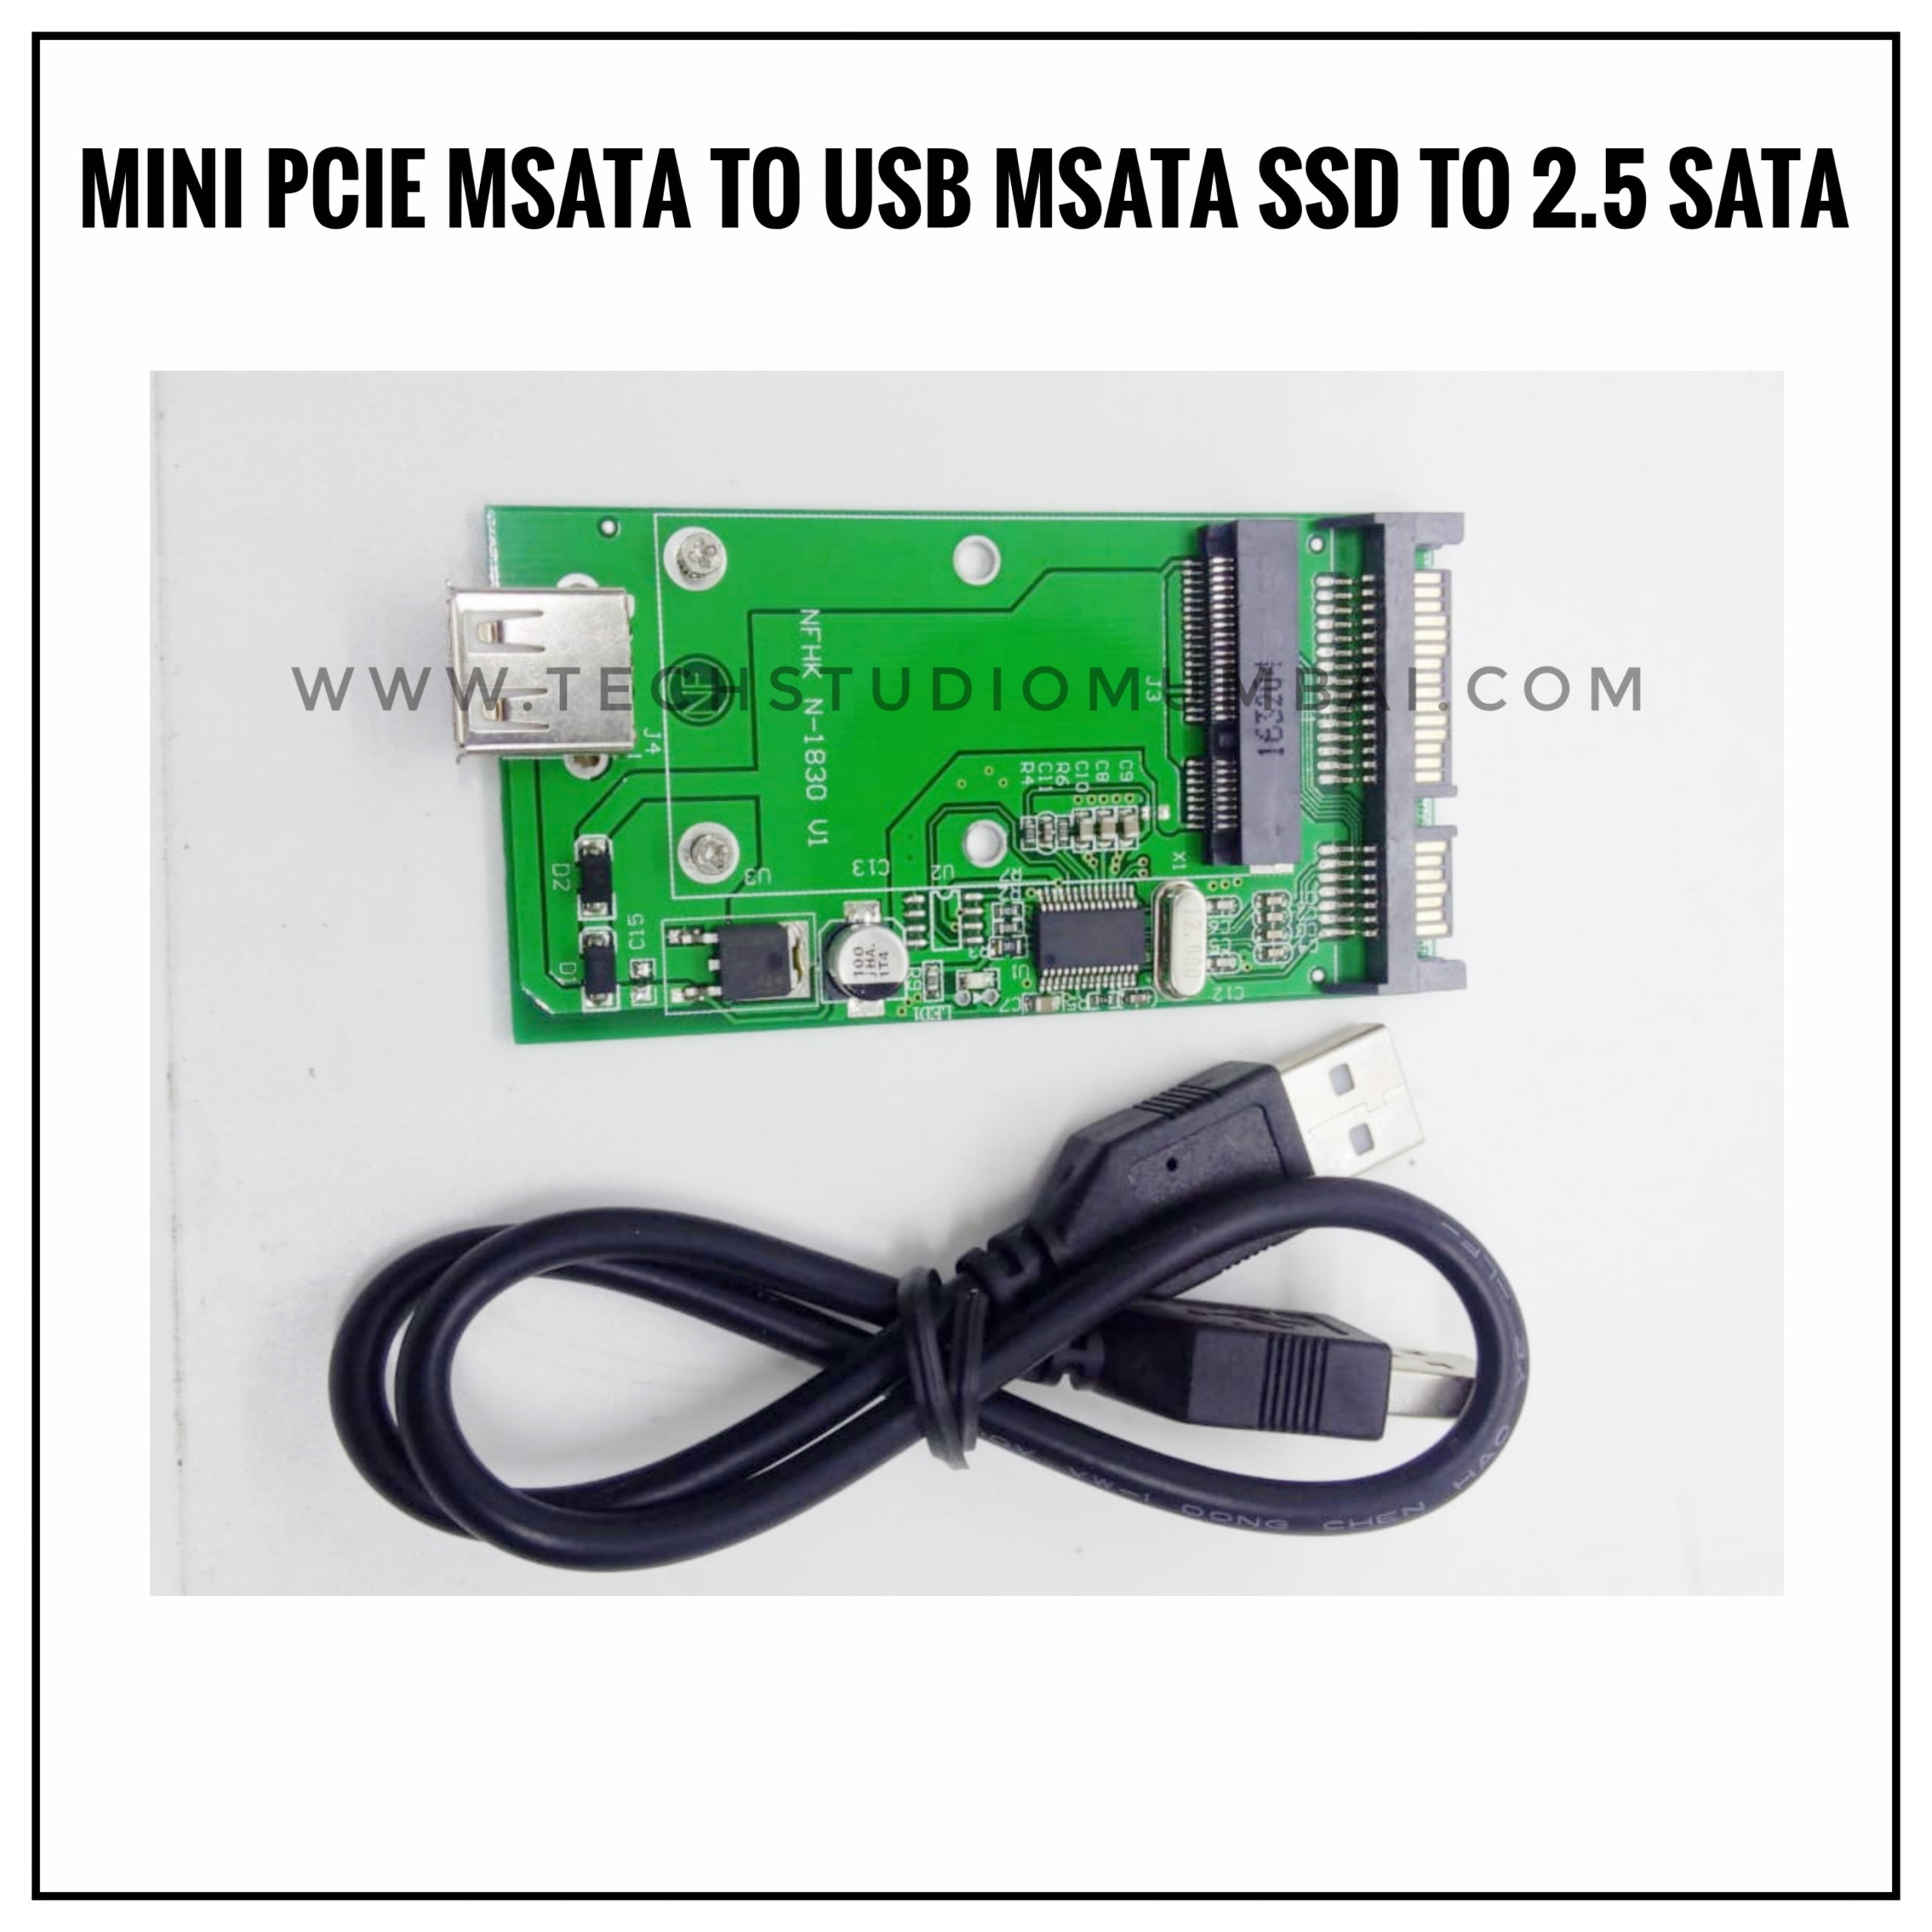 mSATA to USB mSATA to 2.5 SATA